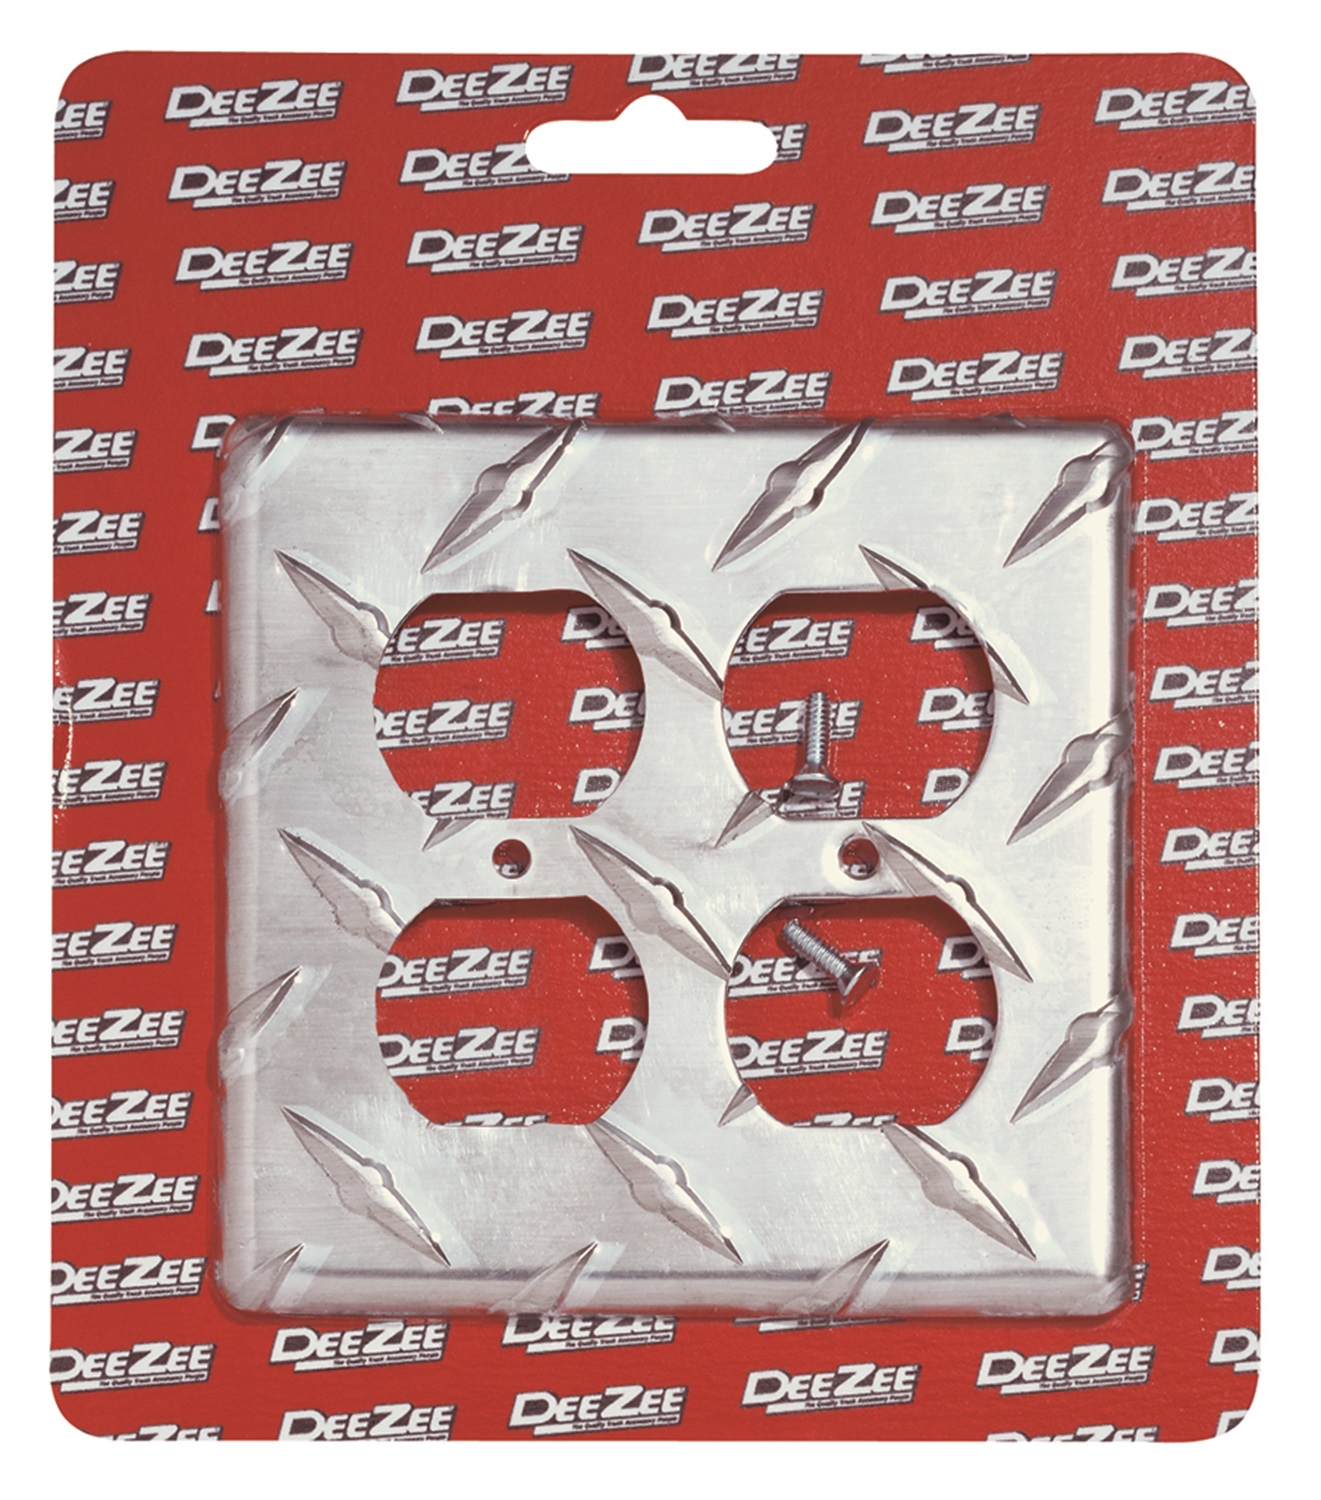 Dee Zee Dee Zee DZ40005 Brite-Tread; Double Electrical Outlet Cover